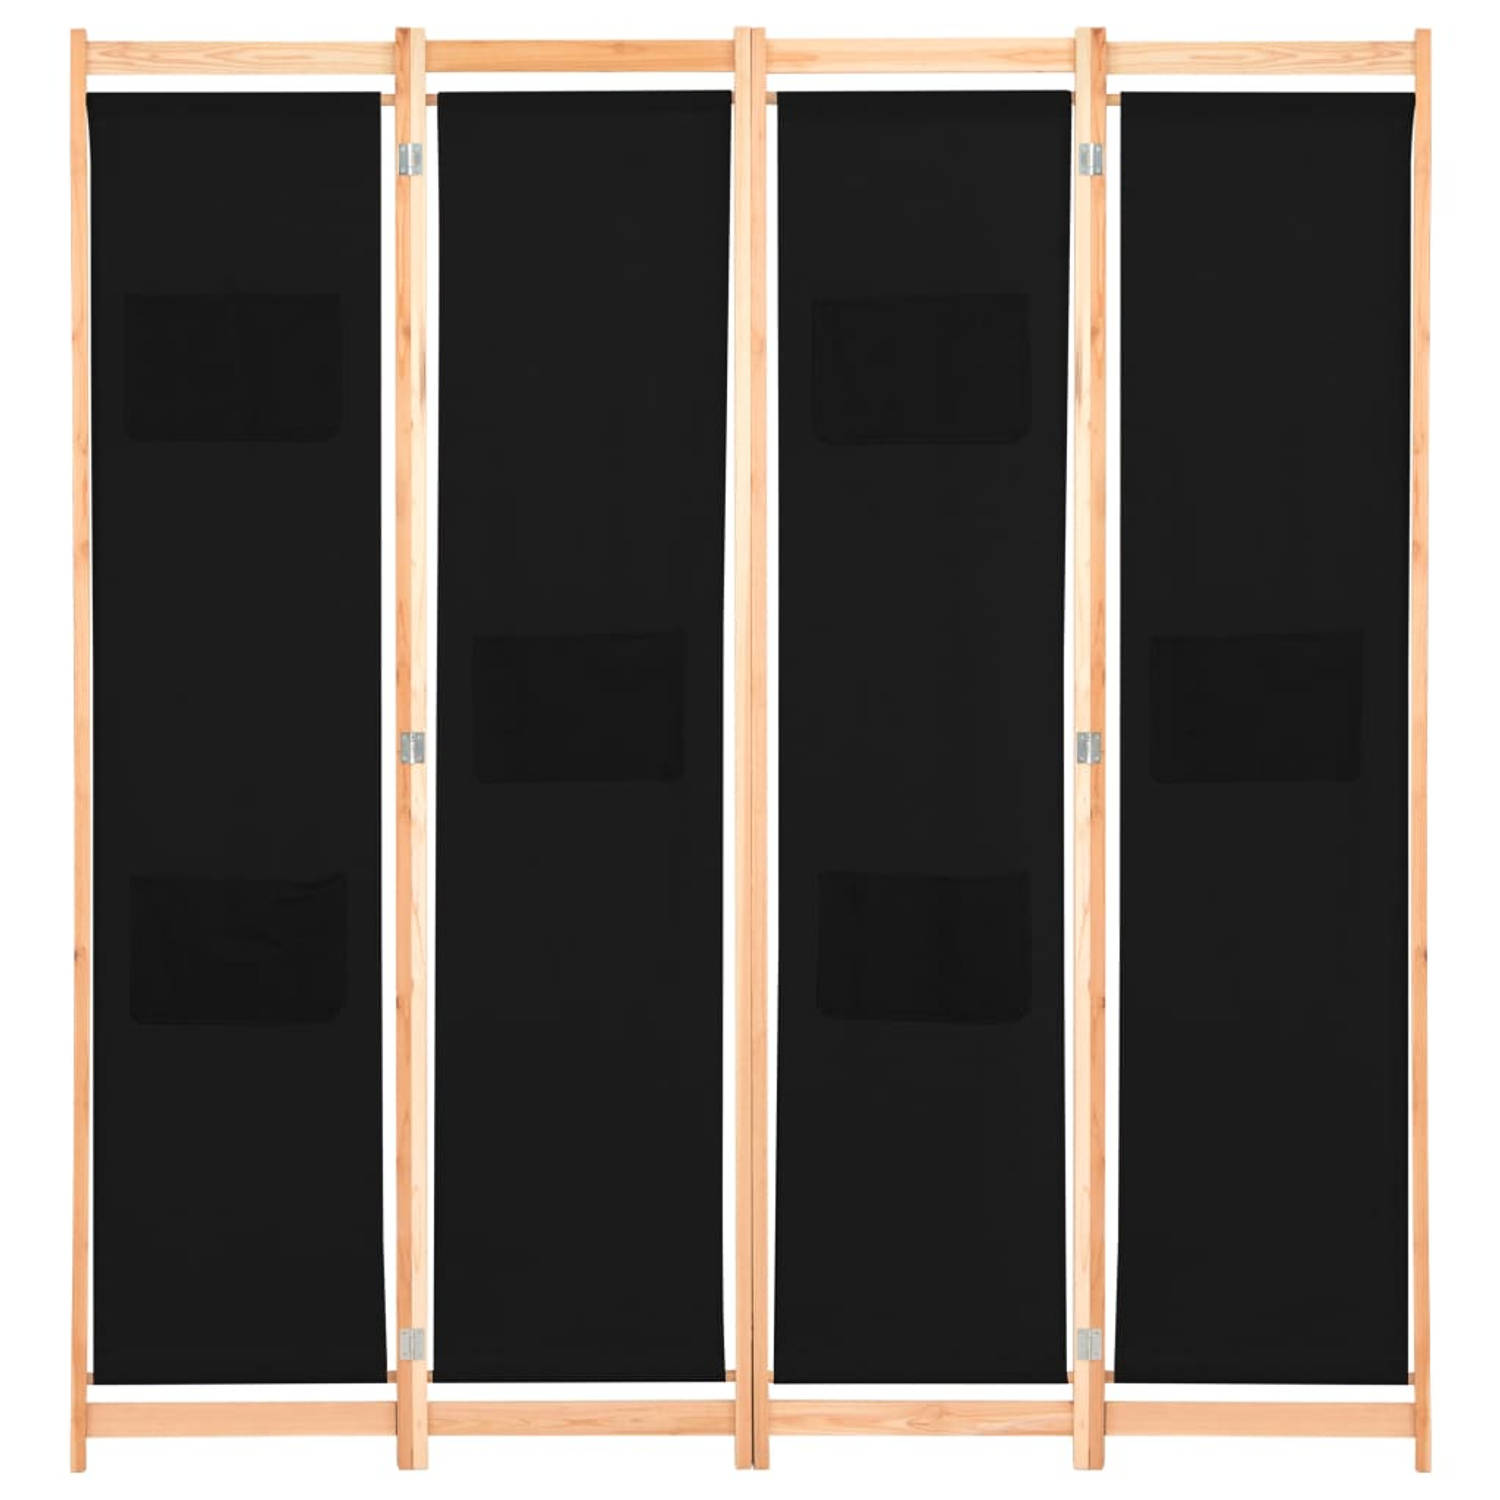 The Living Store Kamerscherm met 4 panelen 160x170x4 cm stof zwart - Kamerscherm